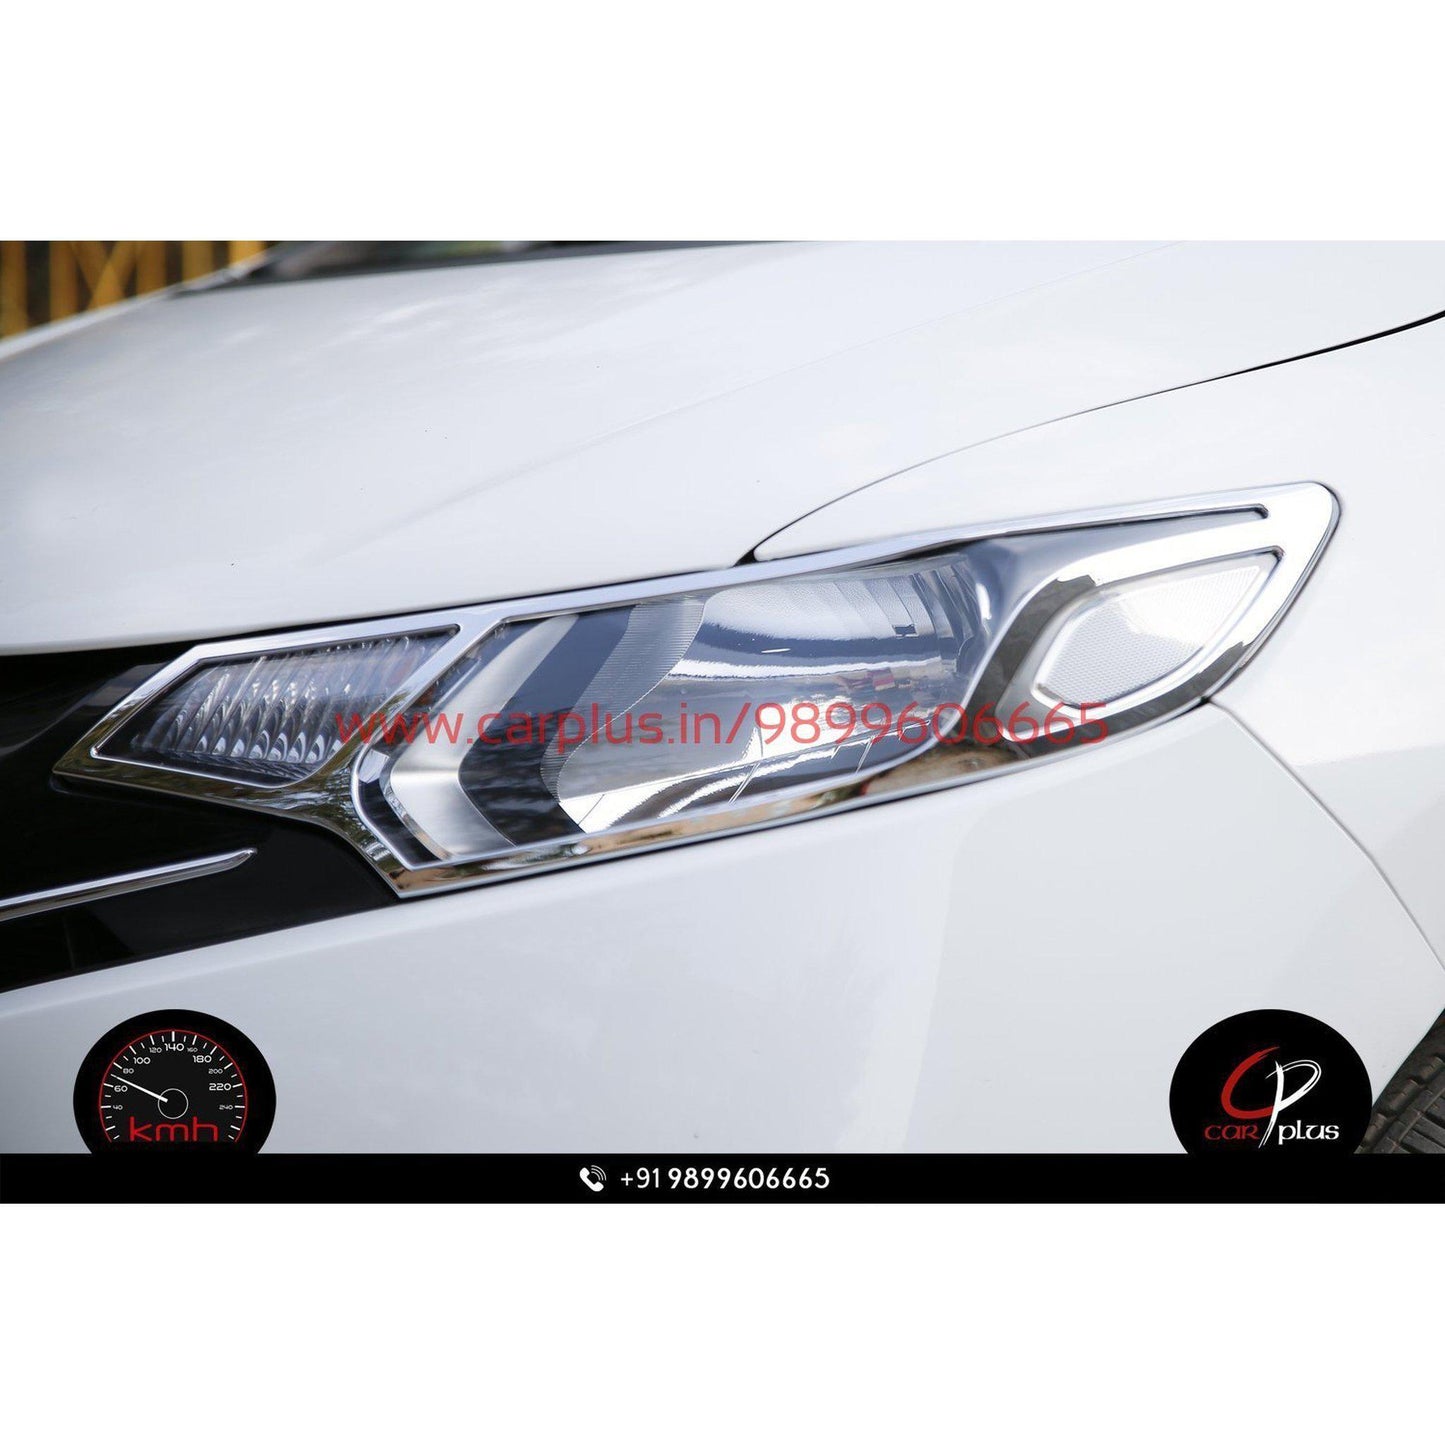 
                  
                    KMH Head Light Cover Chrome for Honda Jazz (2015, Set of 2Pcs) CN LEAGUE EXTERIOR.
                  
                